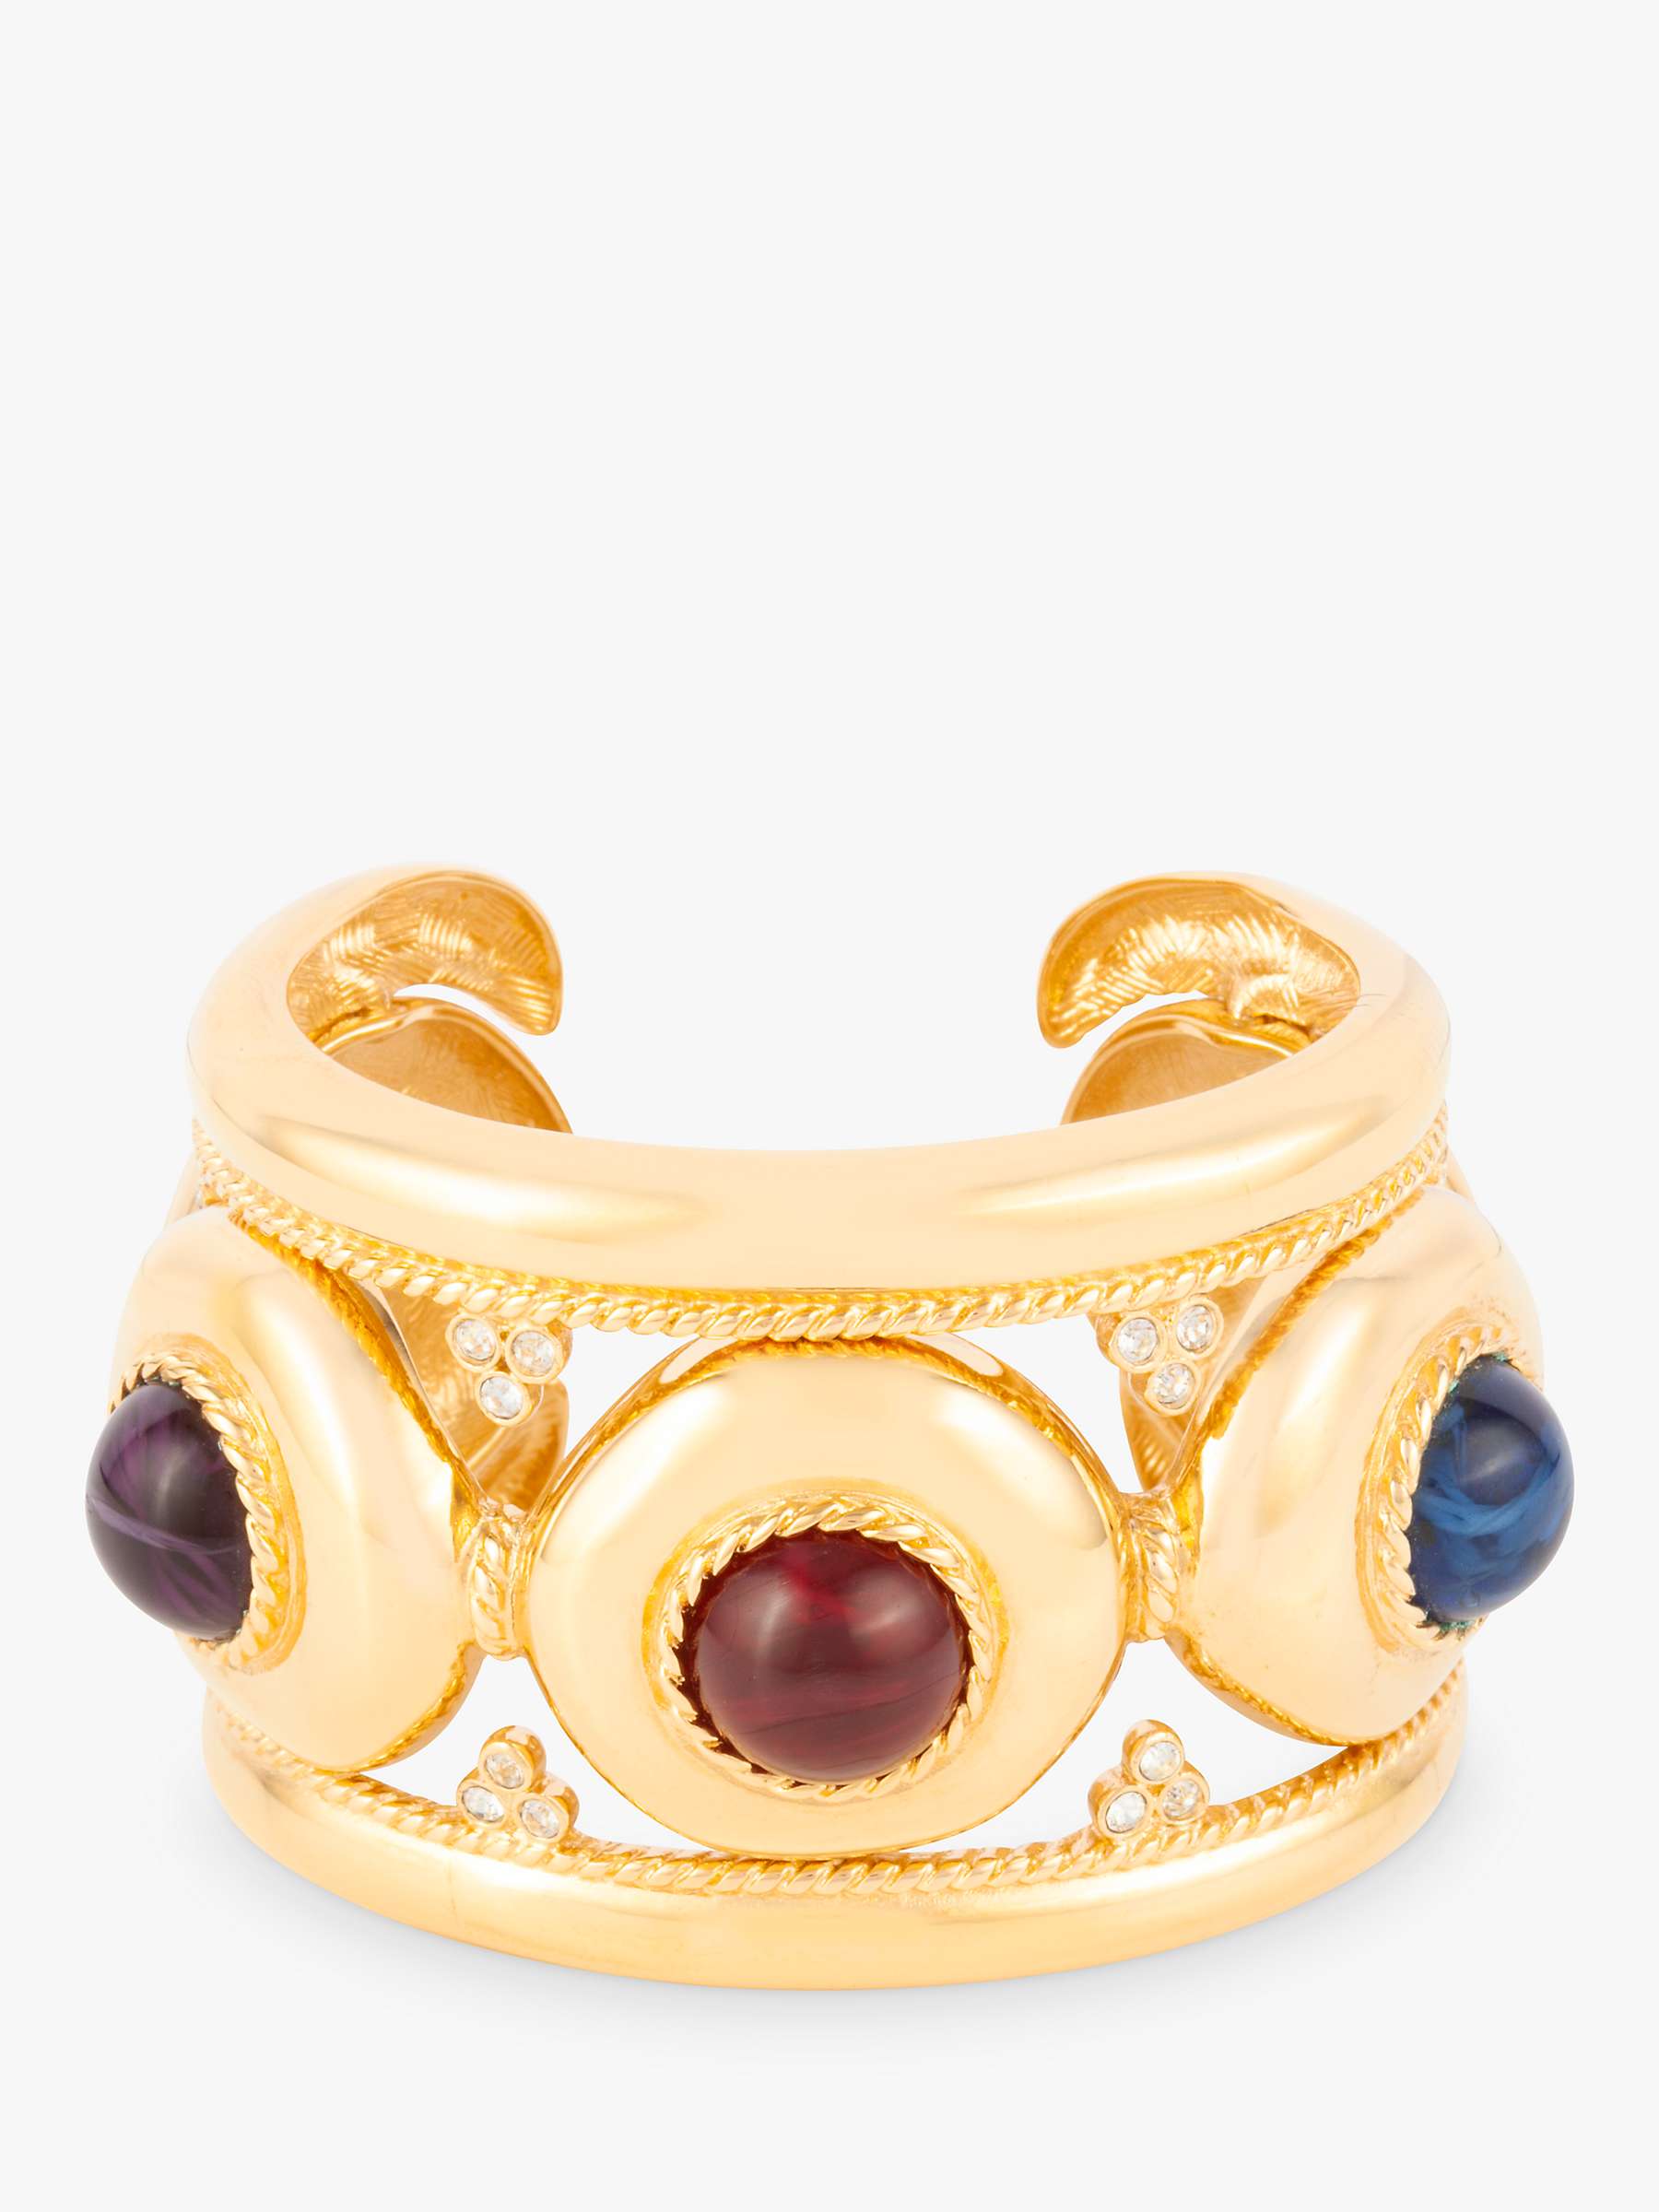 Buy Susan Caplan Vintage Givenchy Swarovski Crystal & Lucite Cuff Bracelet, Gold/Multi Online at johnlewis.com